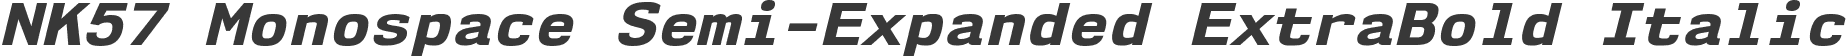 NK57 Monospace Semi-Expanded ExtraBold Italic